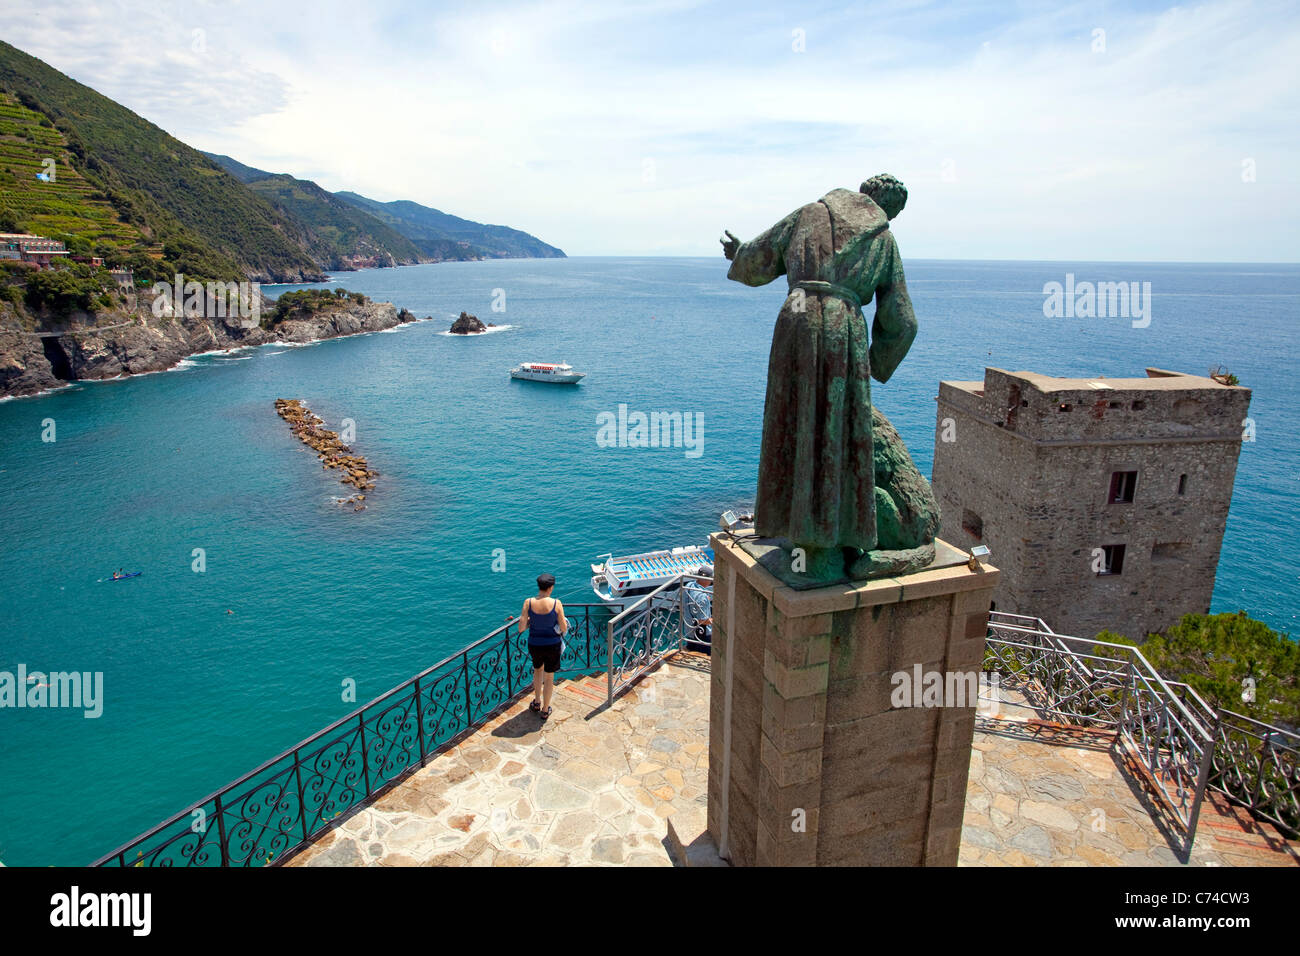 San Francesco d Assisi statua sulla torre del Castello, Monterosso al Mare, Cinque Terre Liguria di Levante, Italia, mare Mediterraneo, Europa Foto Stock